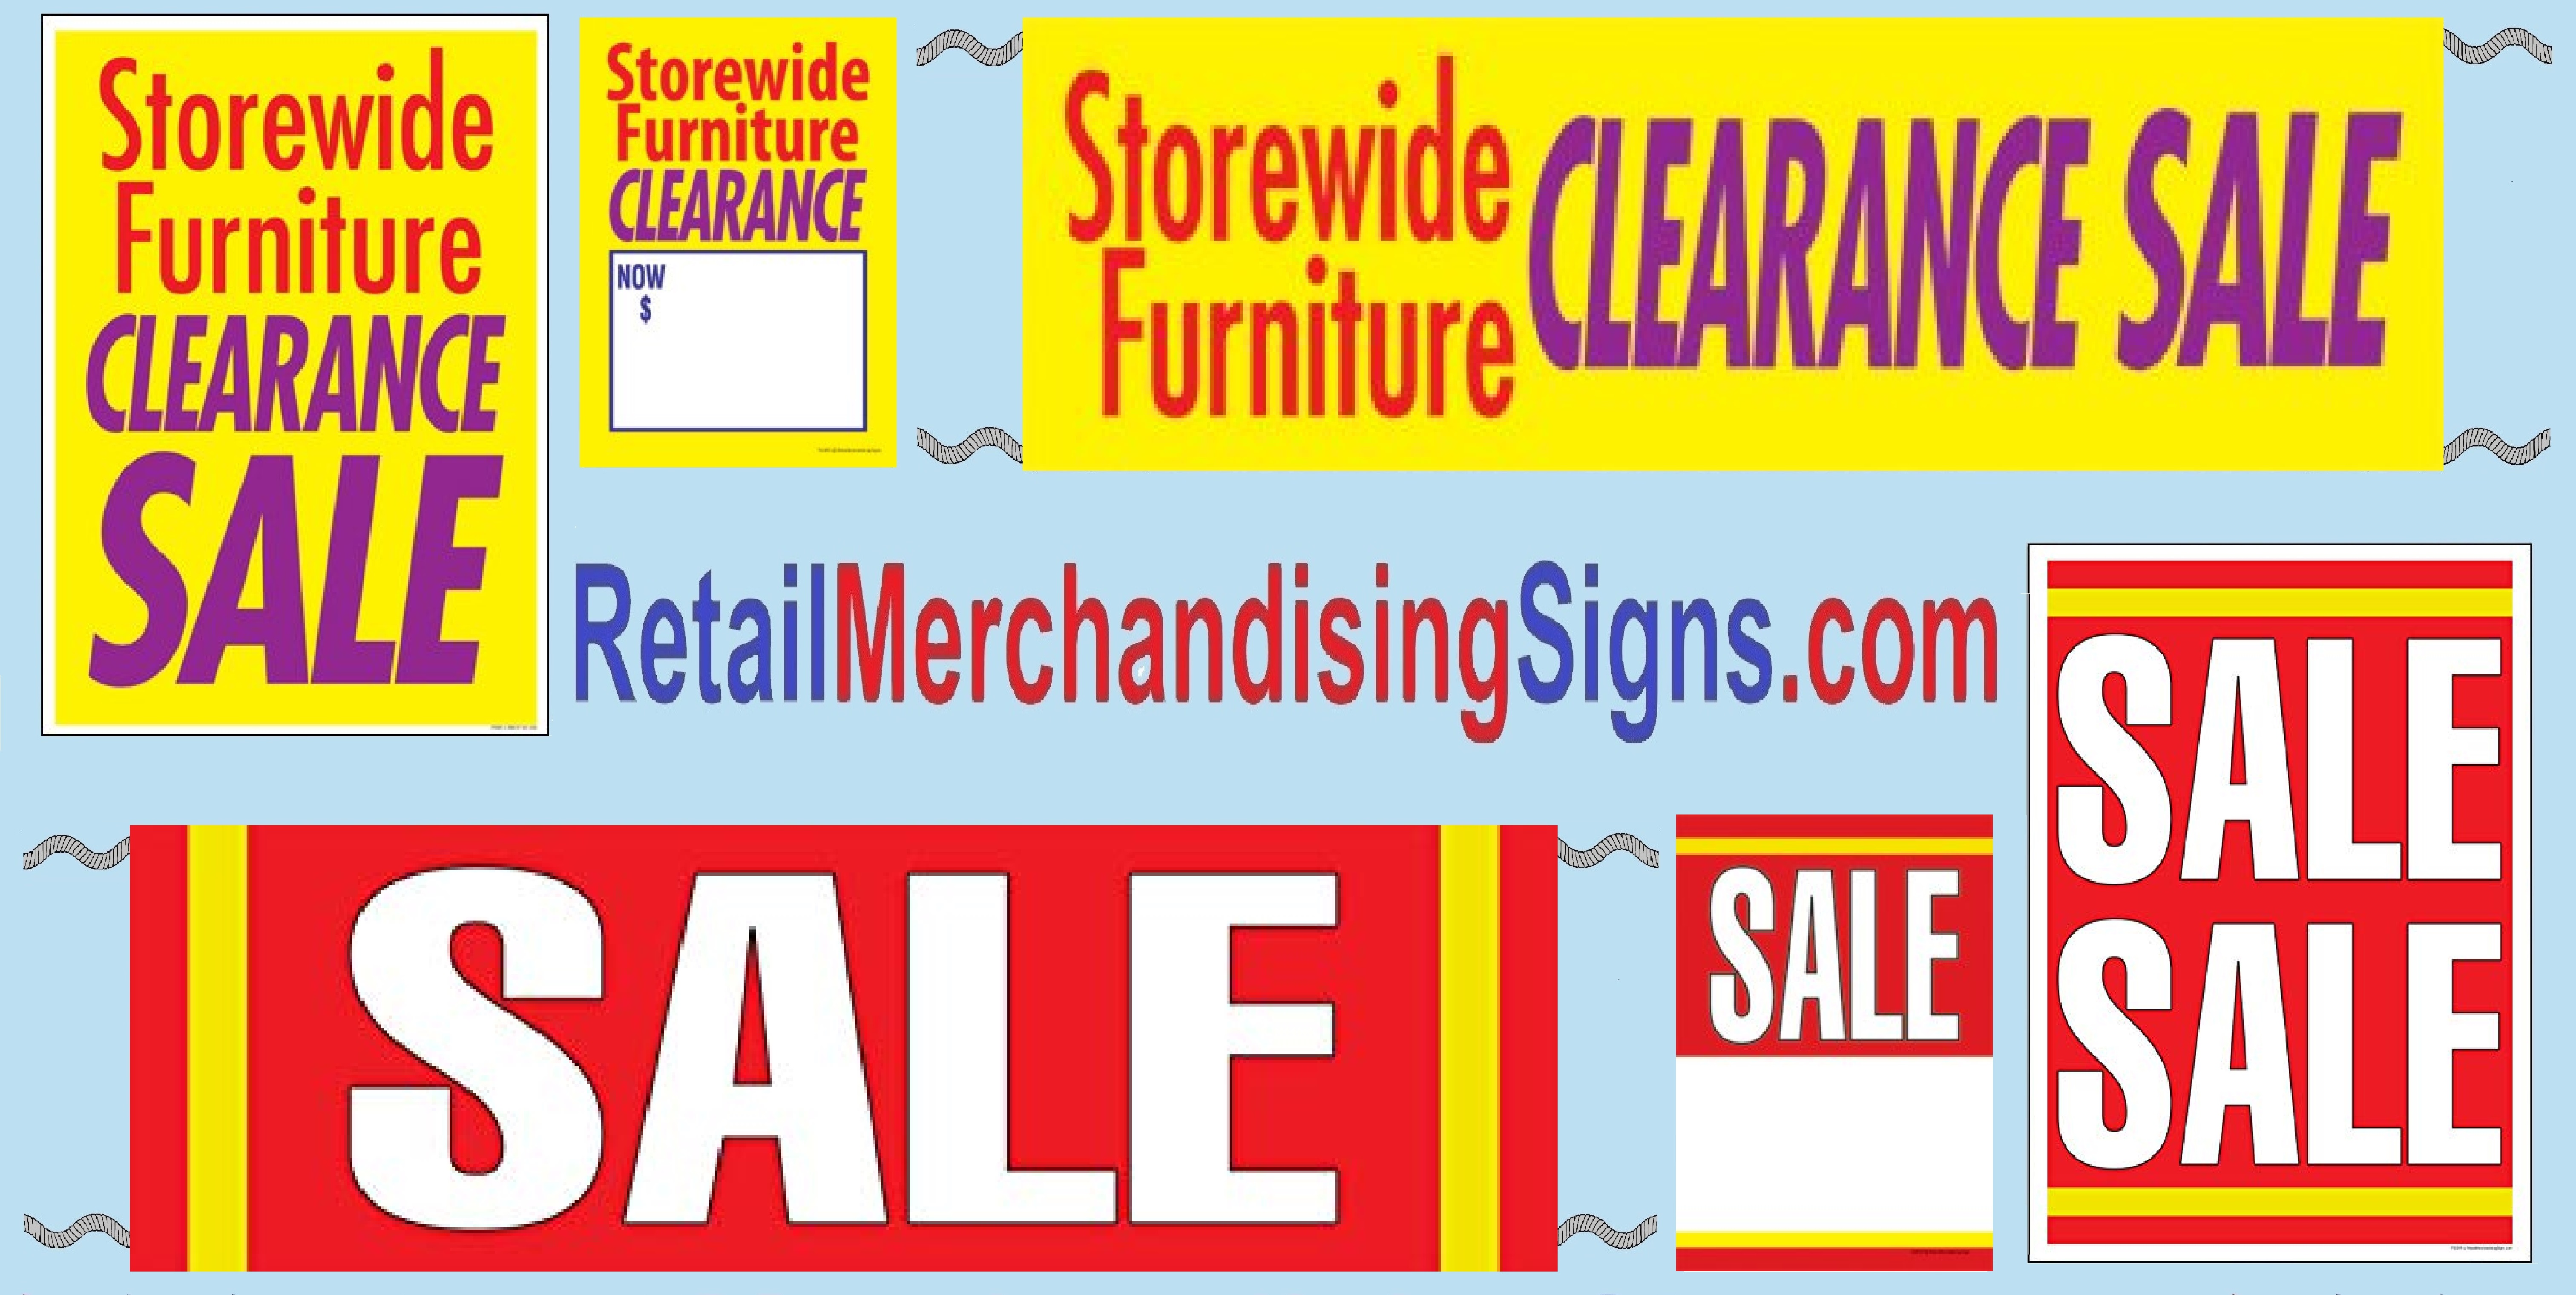 Storewide Furniture Clearance Sale